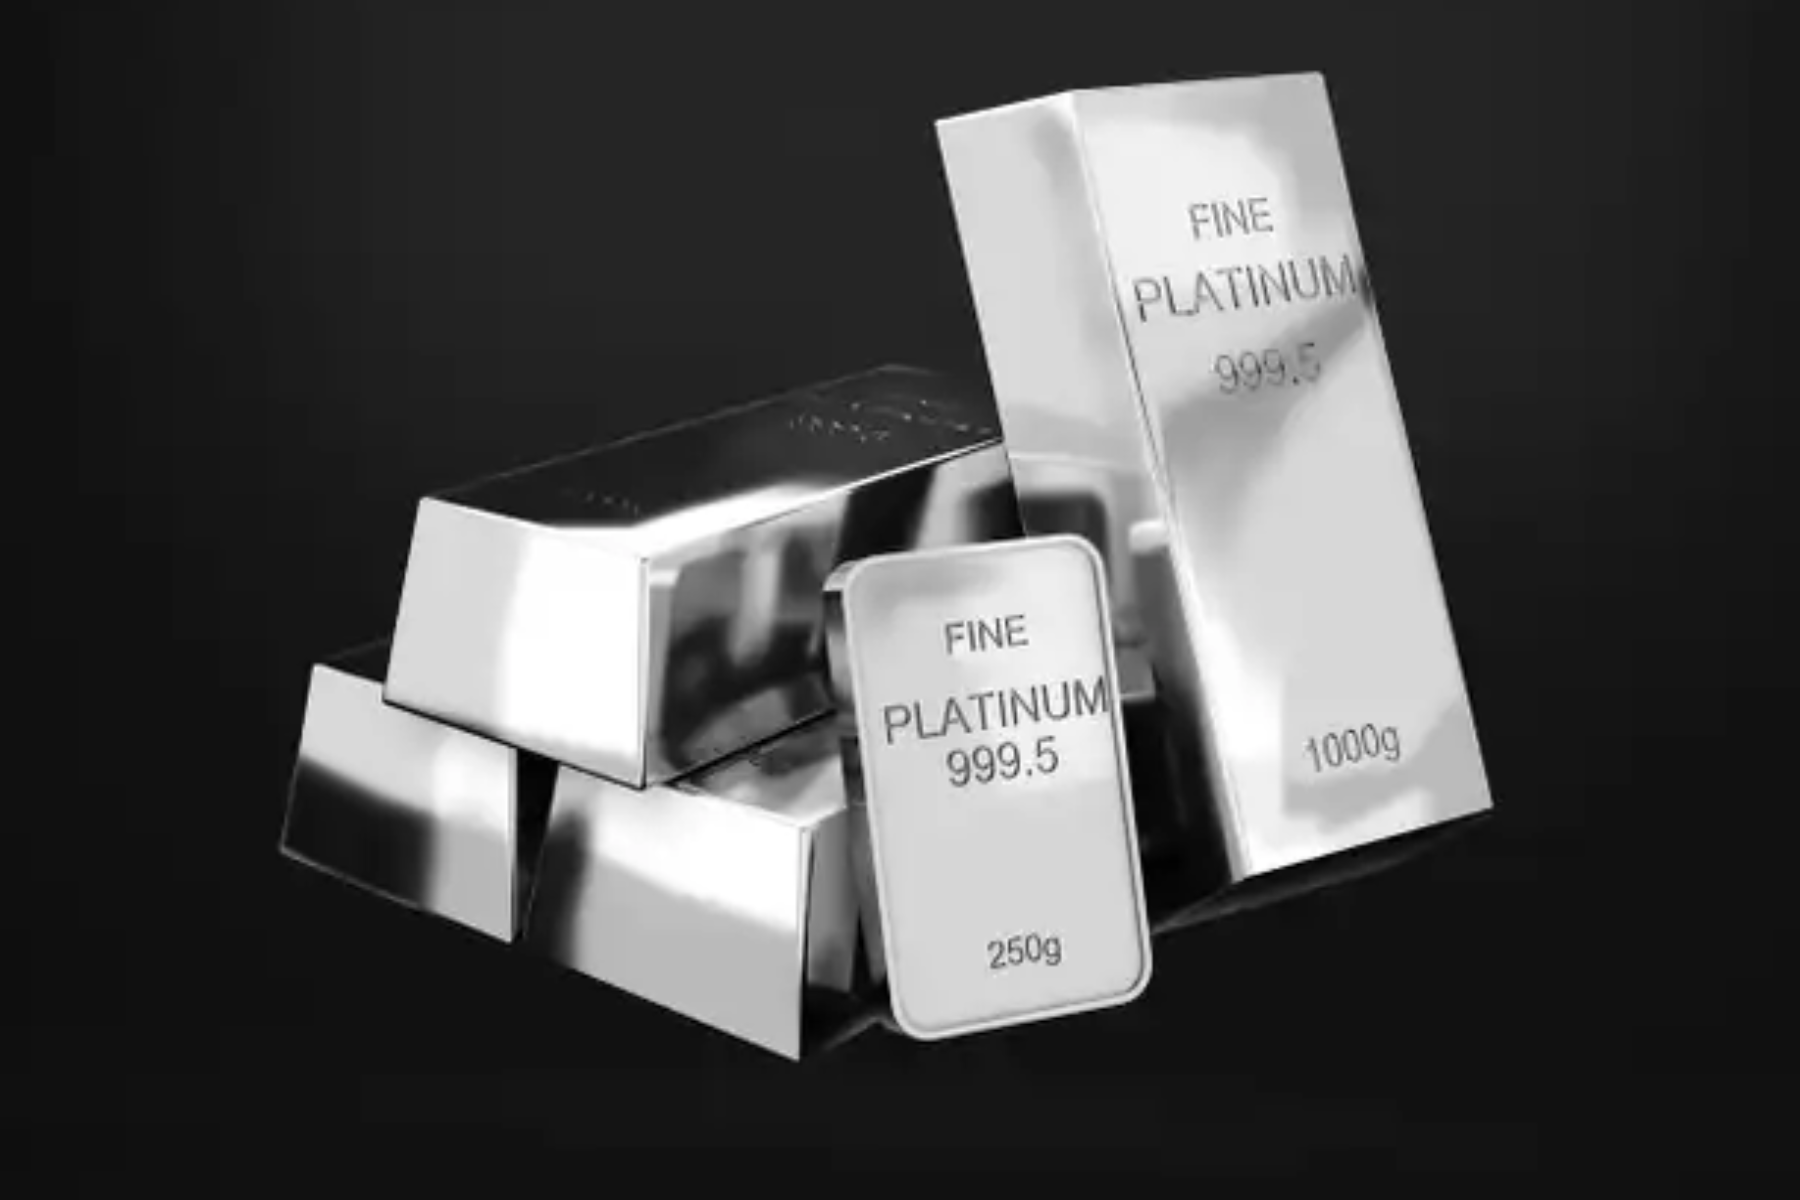 Five platinum bars